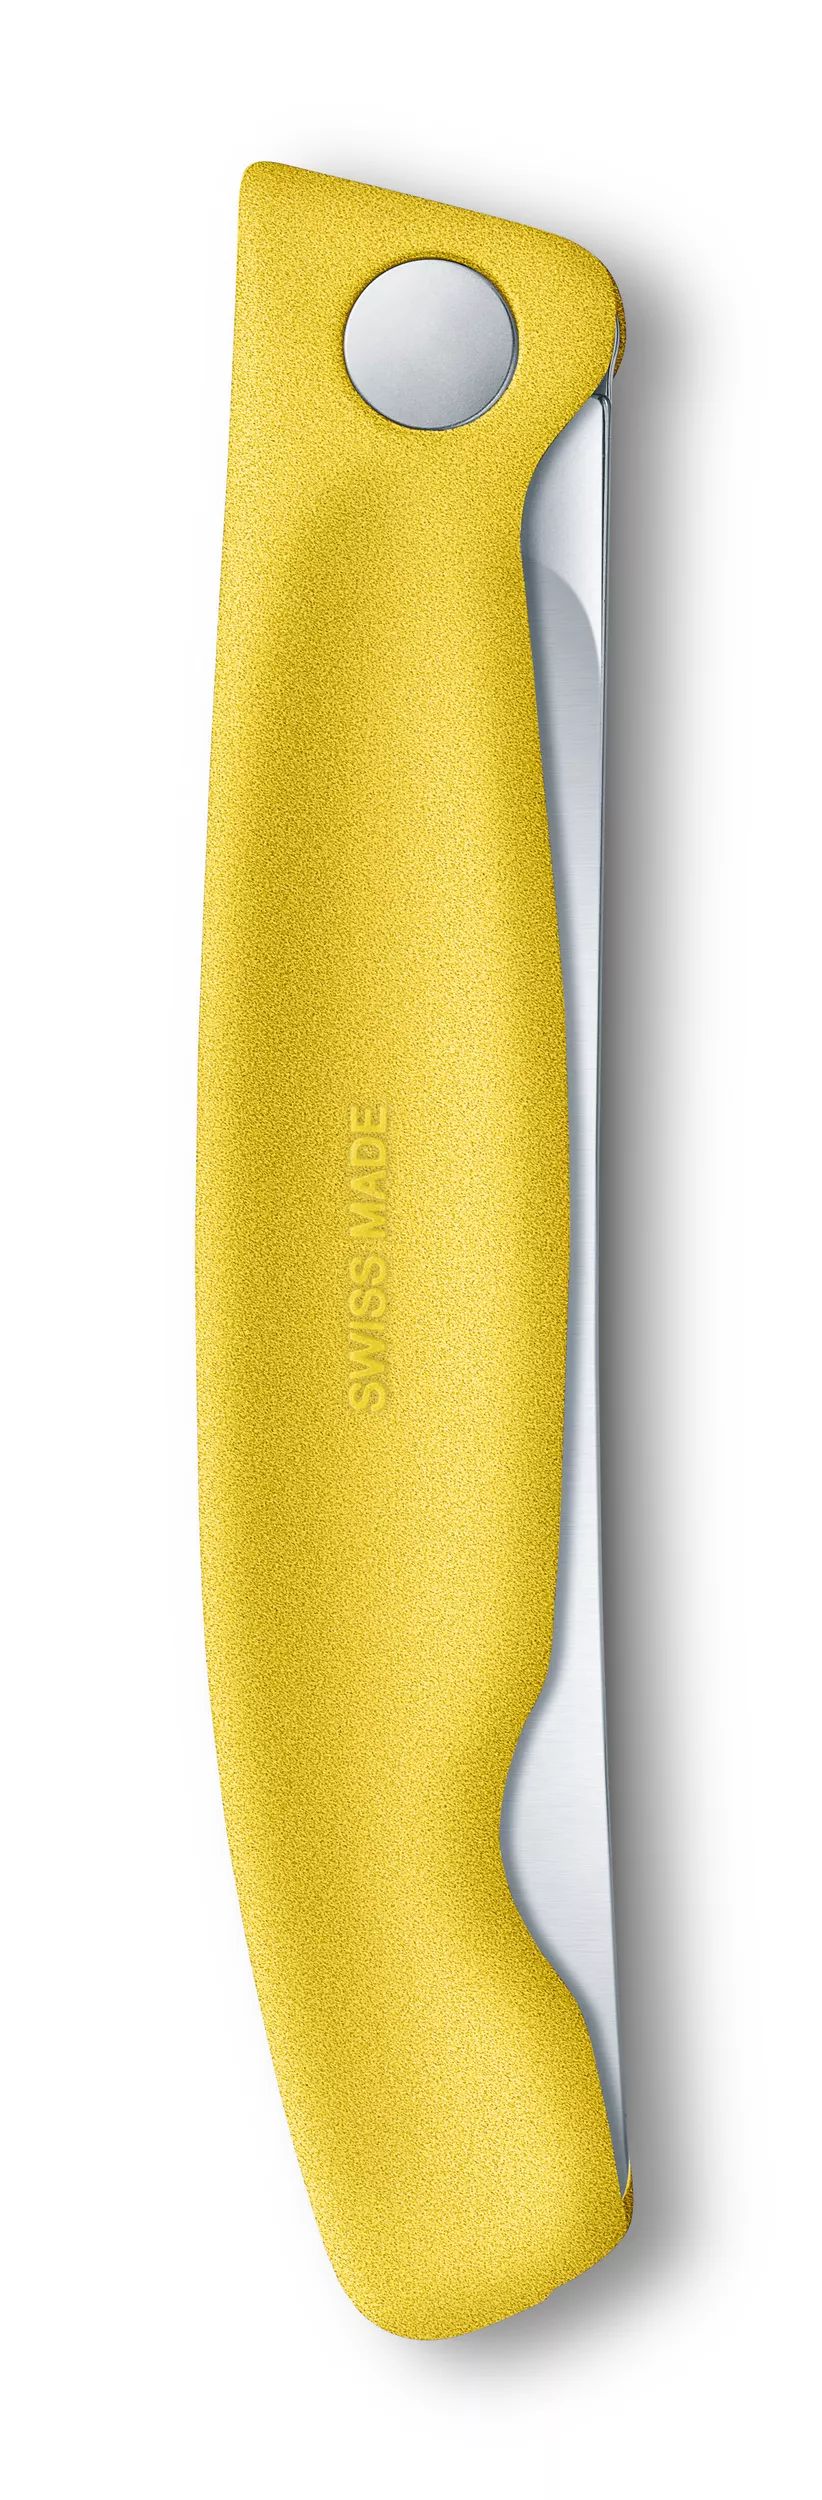 Swiss Classic Picnic Knife - 6.7836.F8B